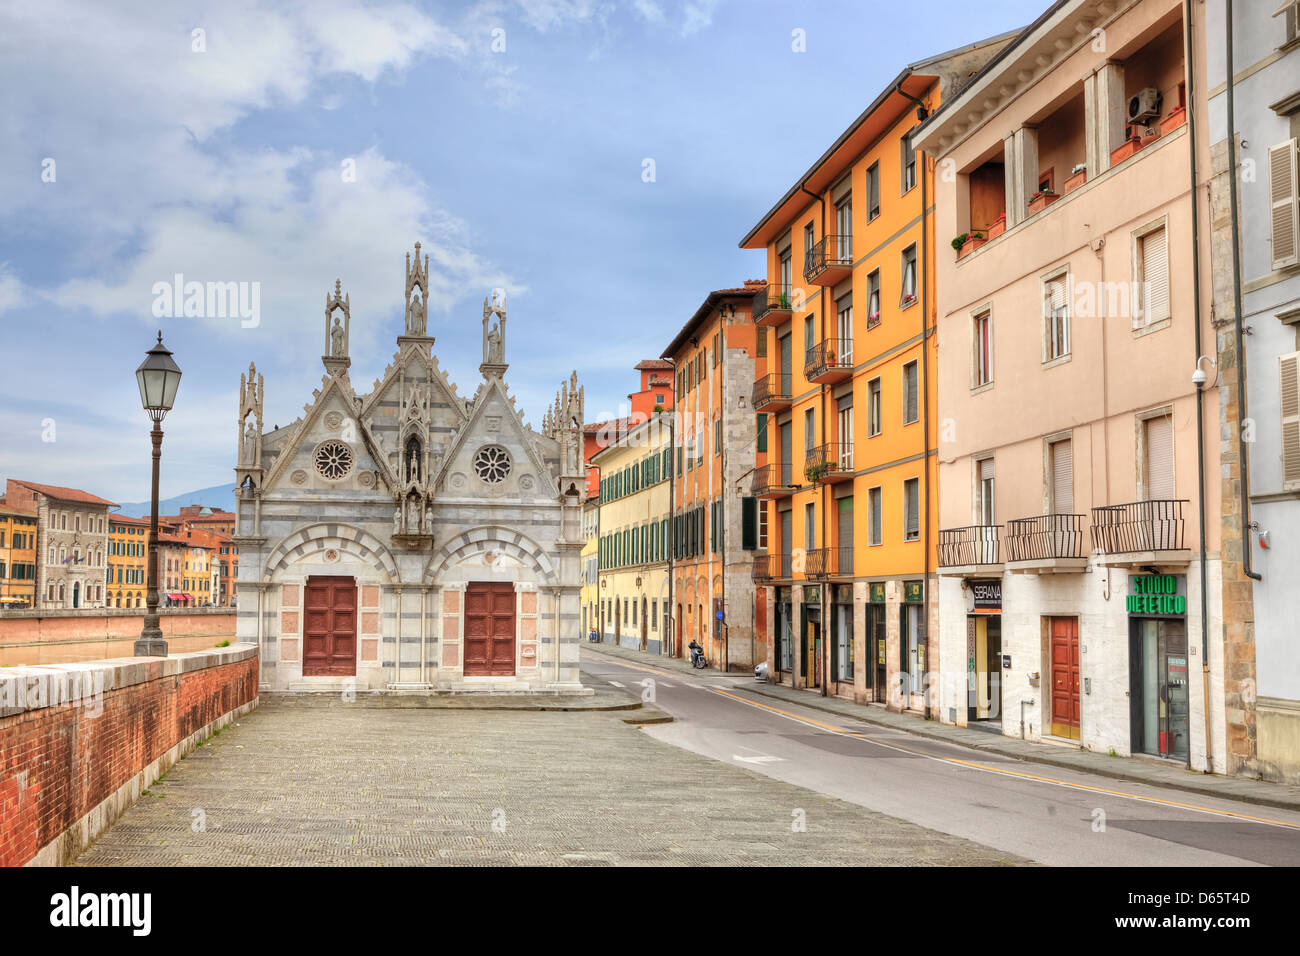 Pisa, Santa Maria della Spina, Tuscany, Italy Stock Photo